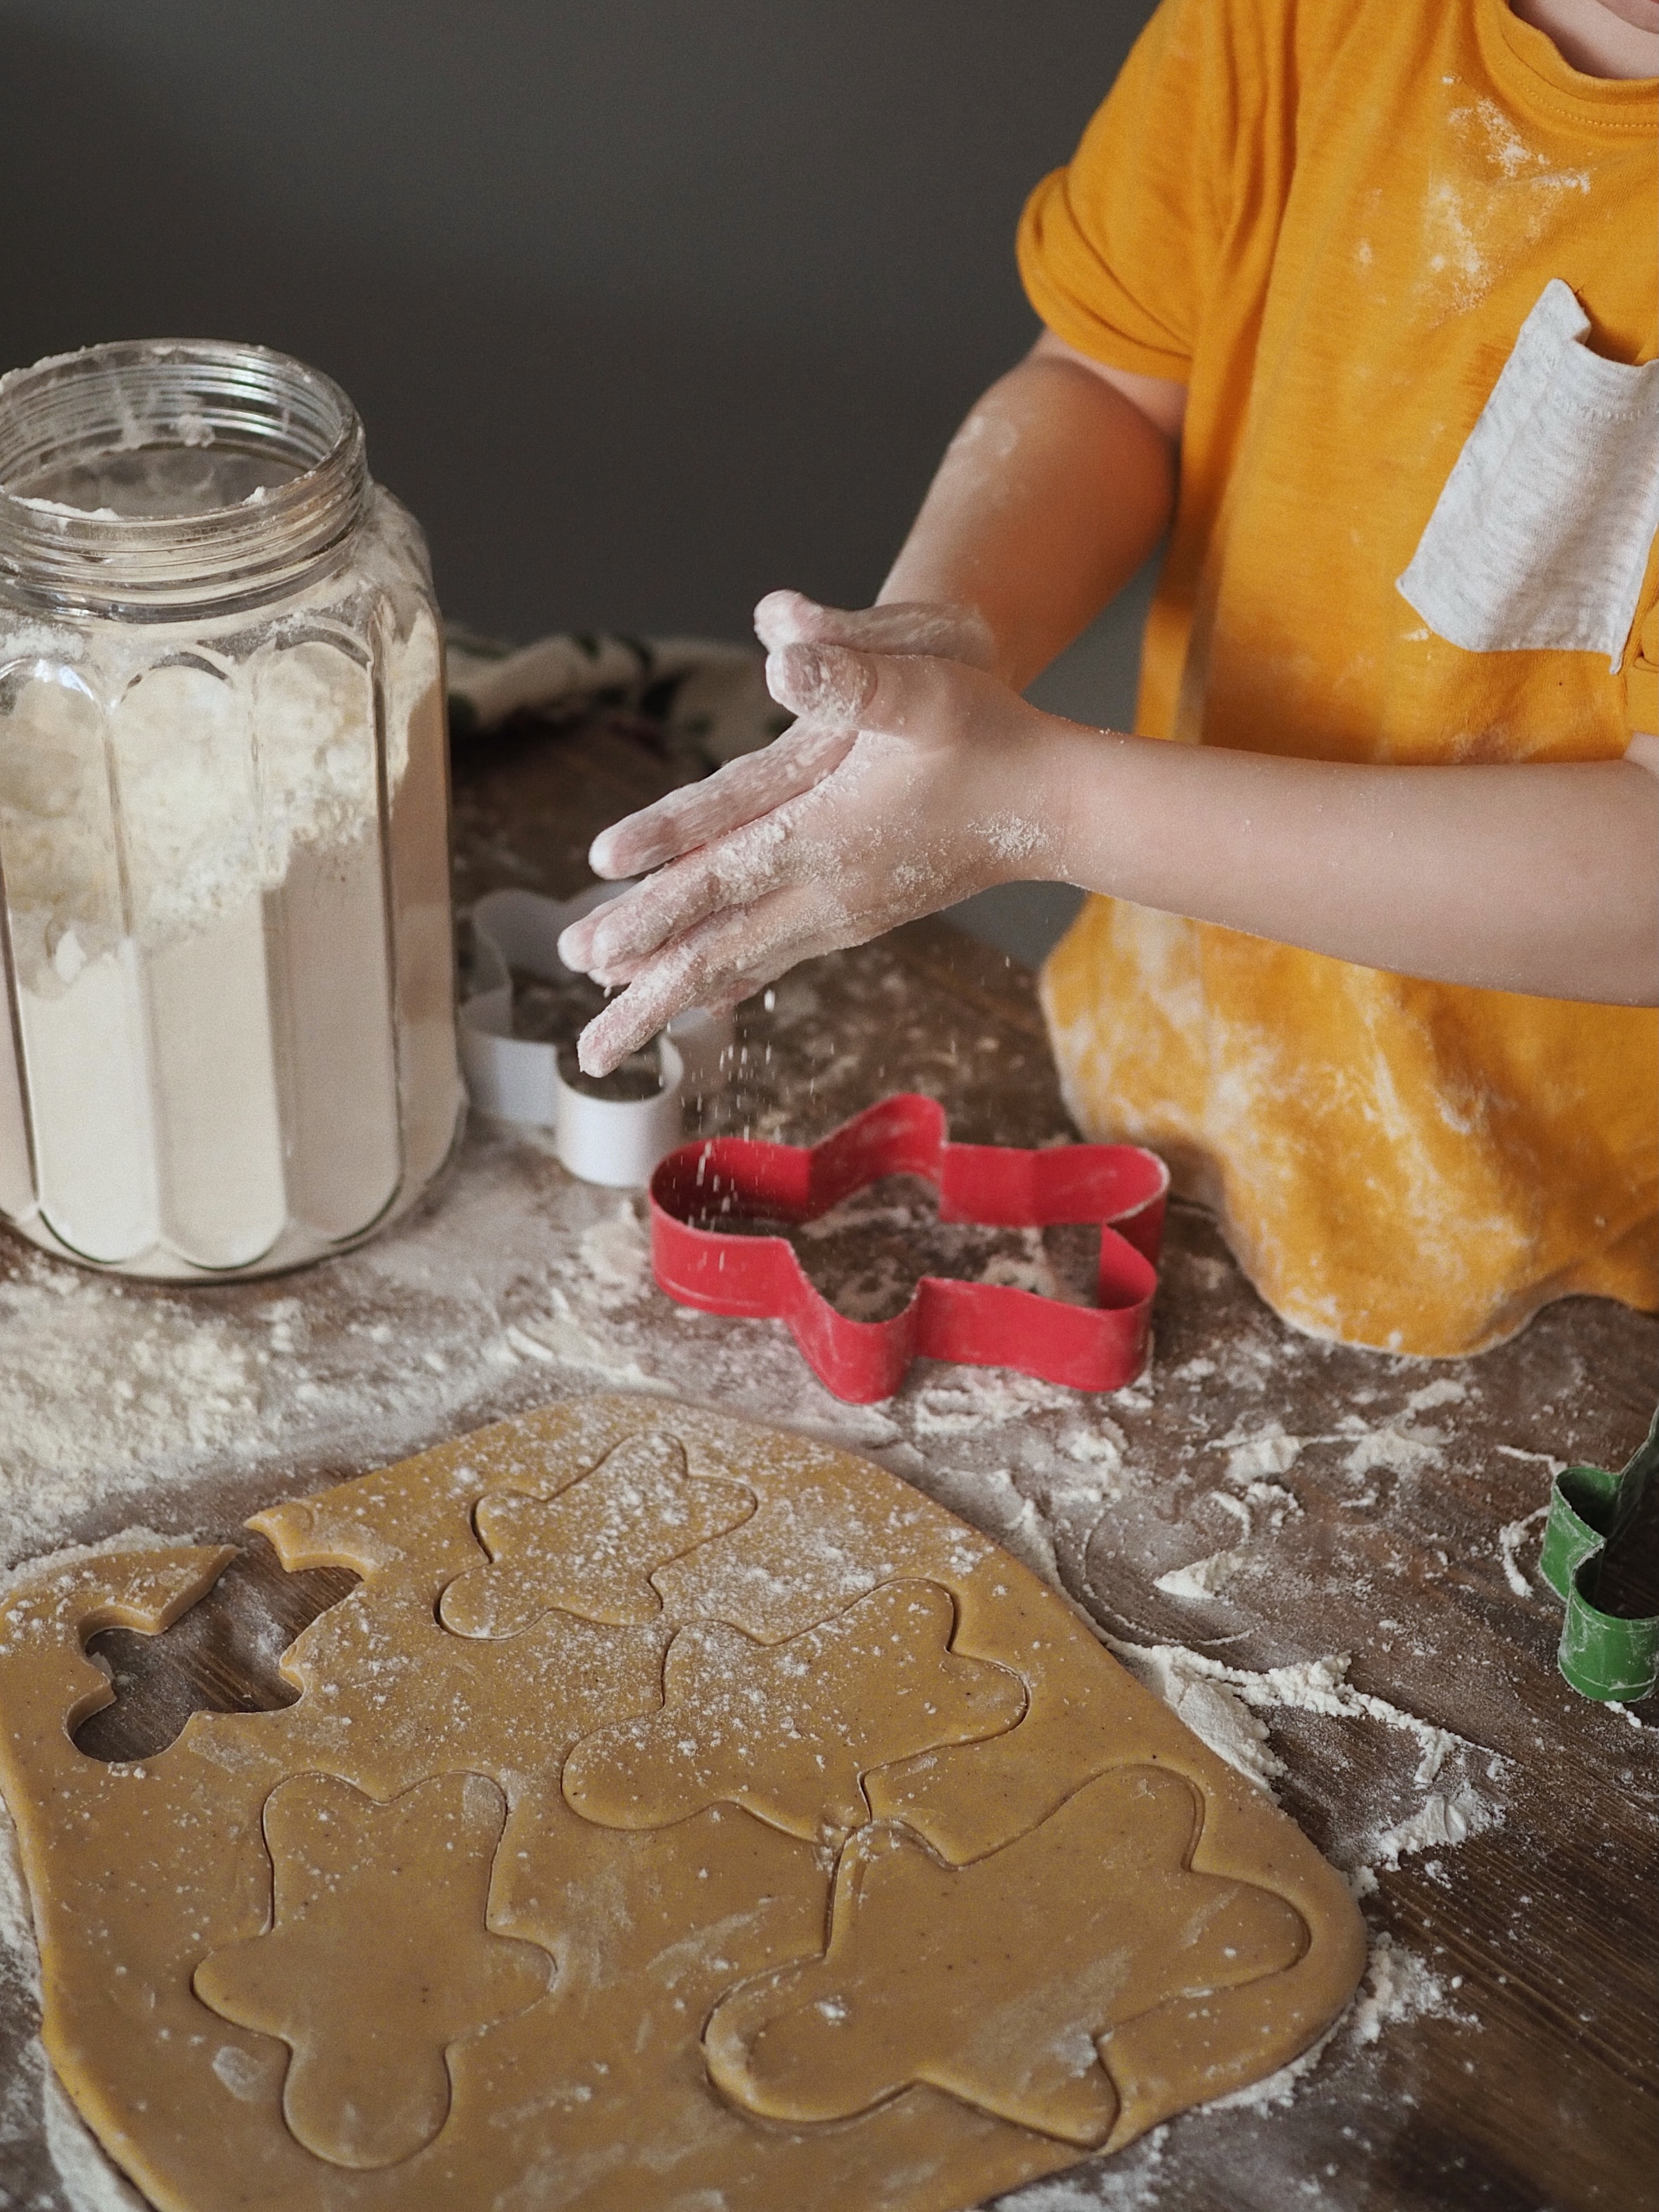 Enfant préparant des biscuits | Source : Unsplash